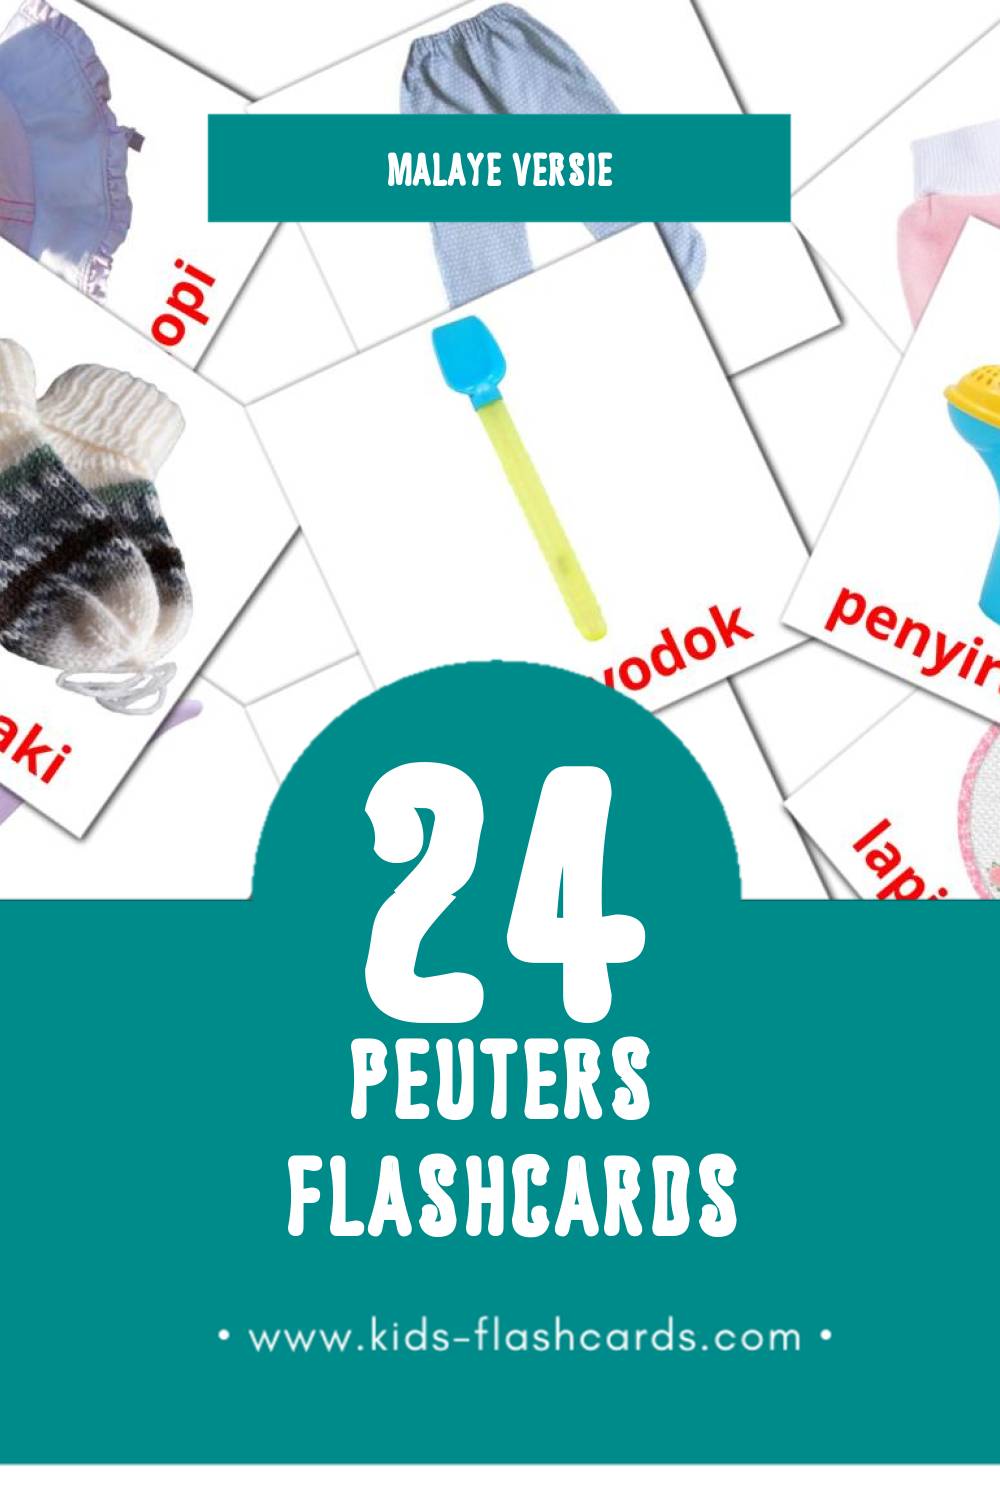 Visuele Bayi Flashcards voor Kleuters (24 kaarten in het Malay)